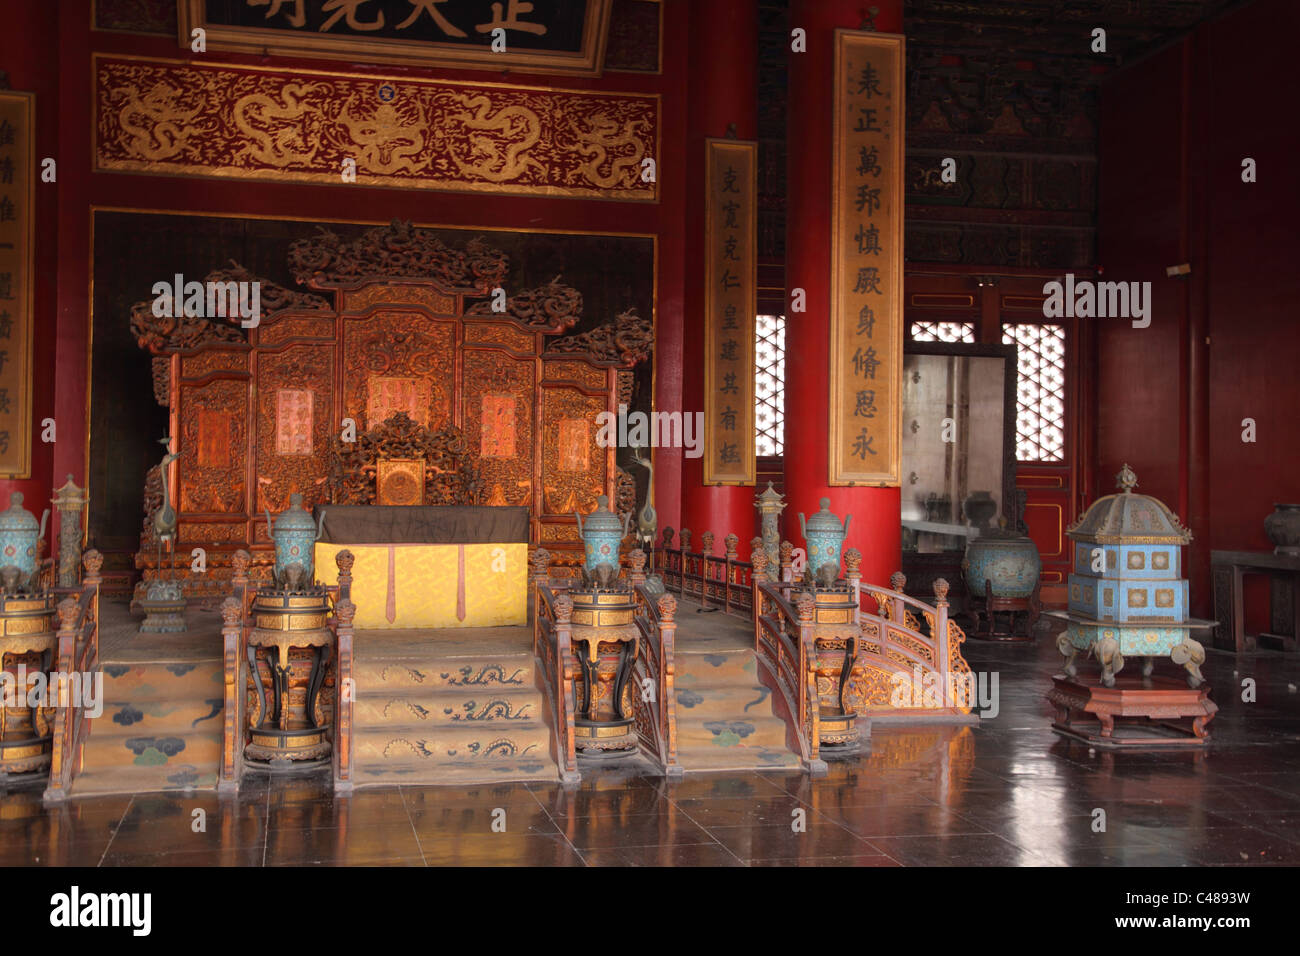 Palacio de la Pureza celestial Interior, Ciudad Prohibida, Beijing, China Foto de stock